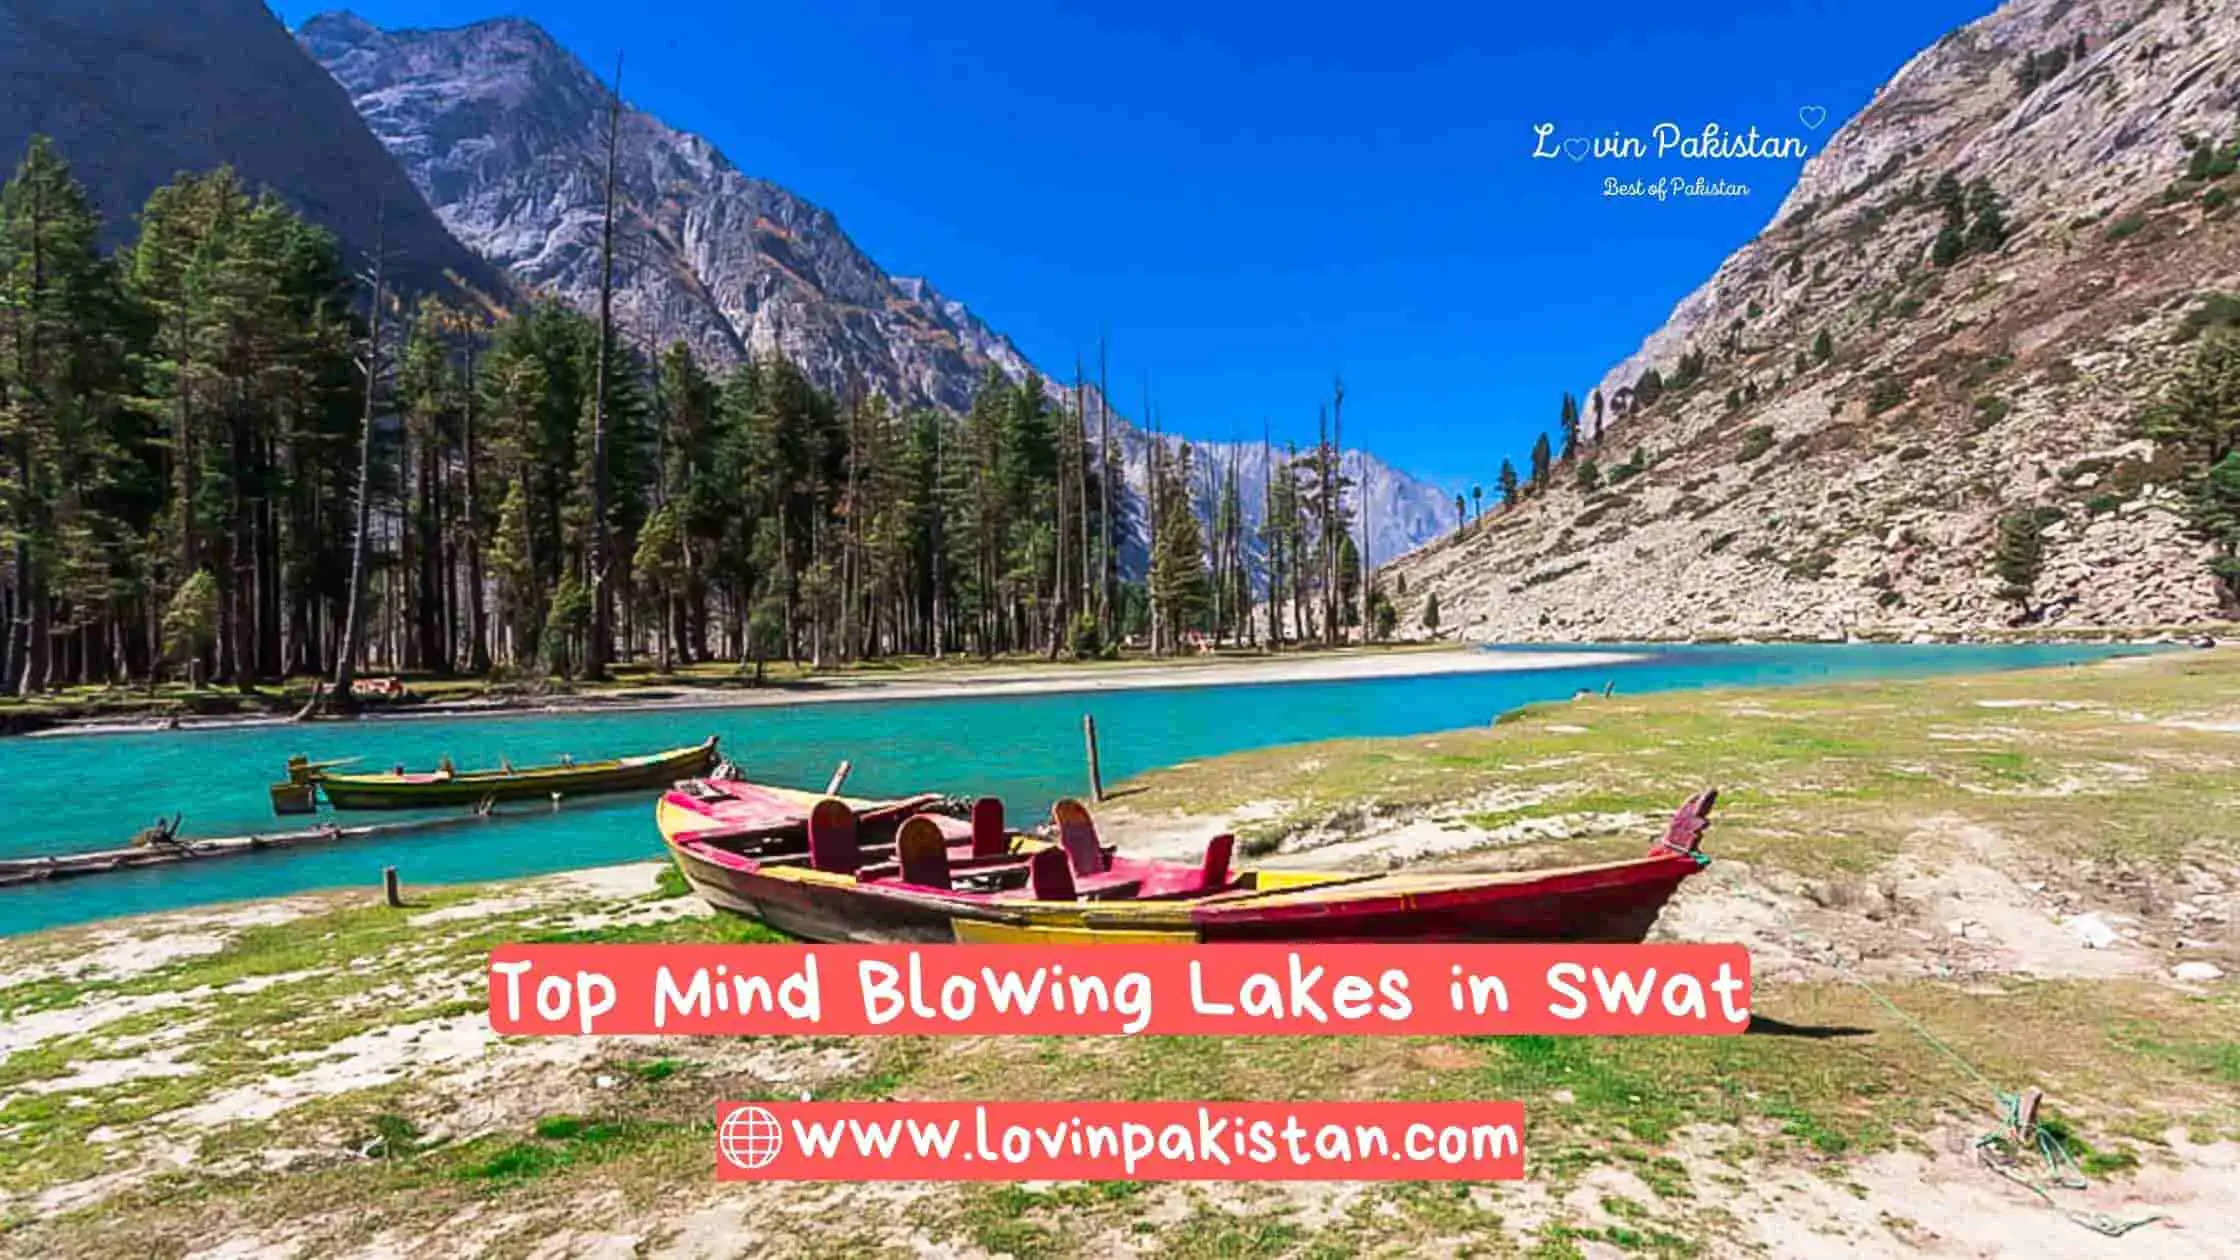 Top Mind Blowing Lakes in Swat